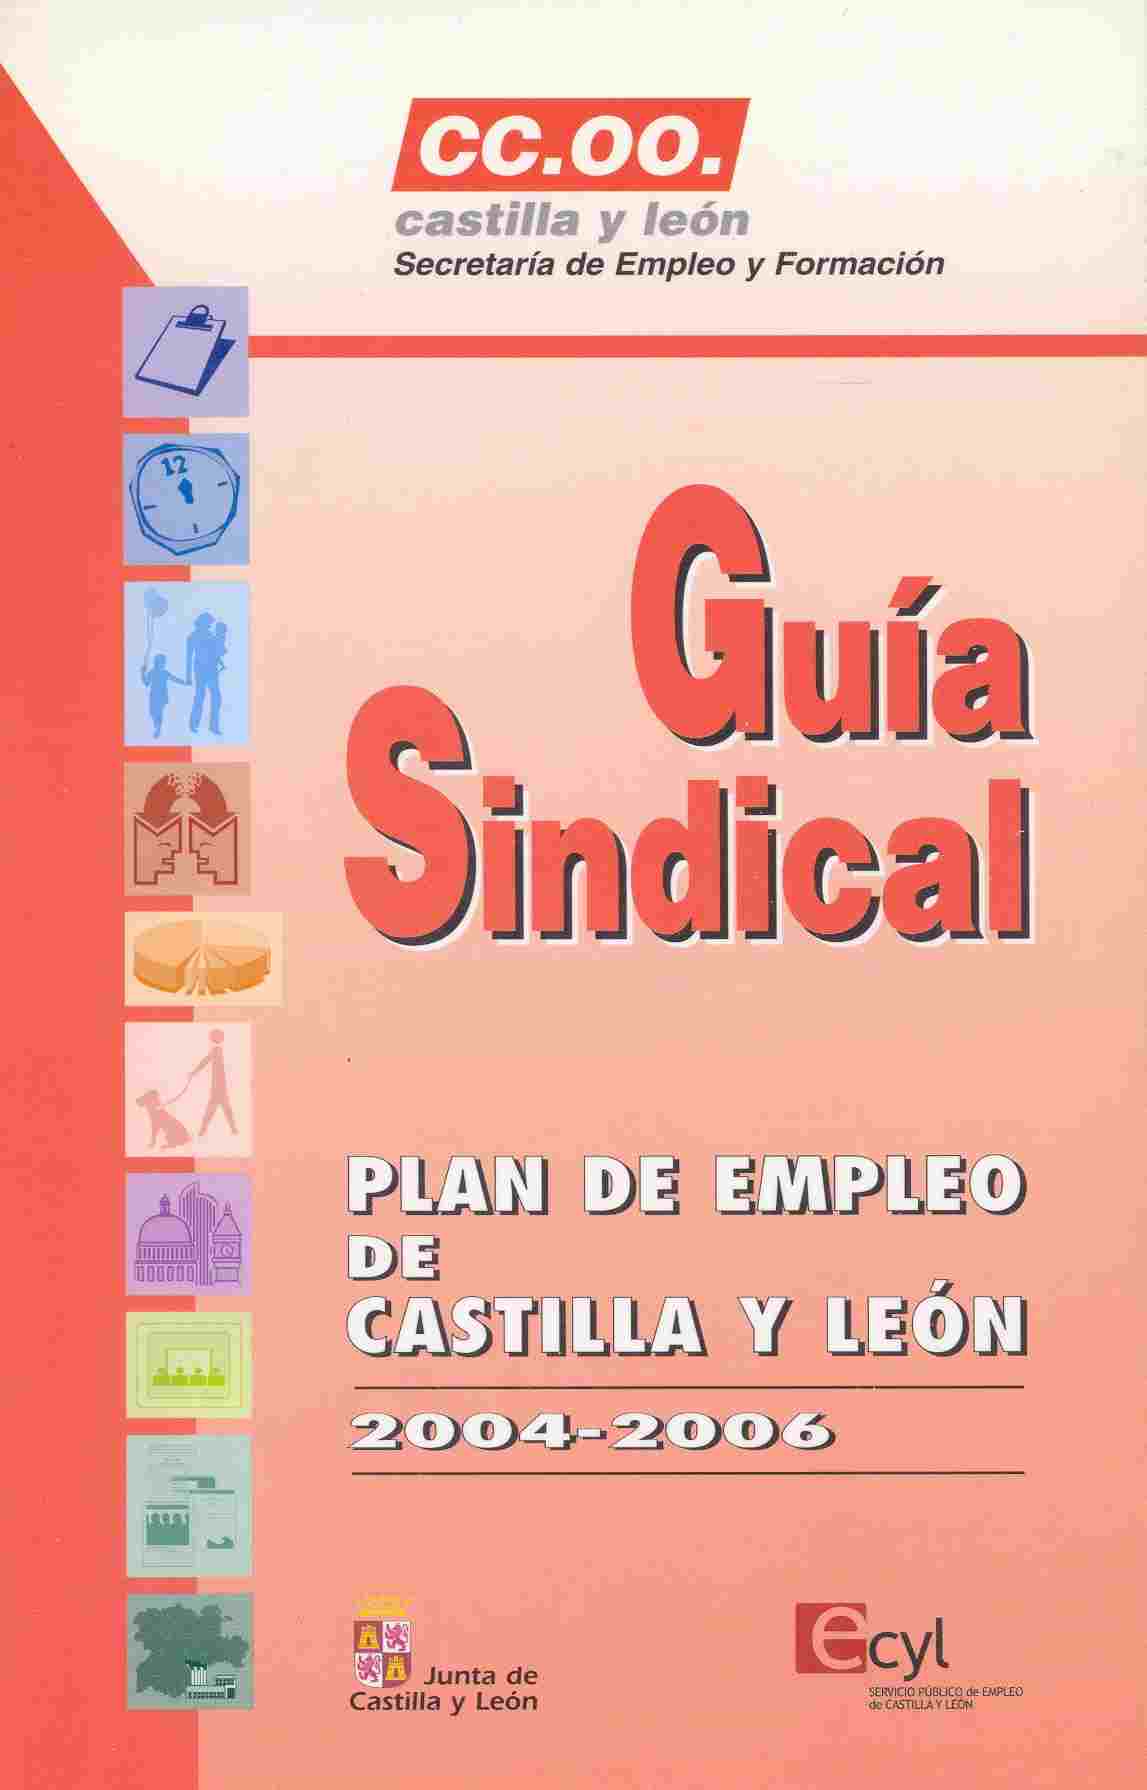 El día 13 de febrero de 2004 se firmó el acuerdo sobre el III Plan de empleo de Castilla y León para el período 2004-2006. Como ya sabeís de años anteriores éste contiene un buen número de programas d